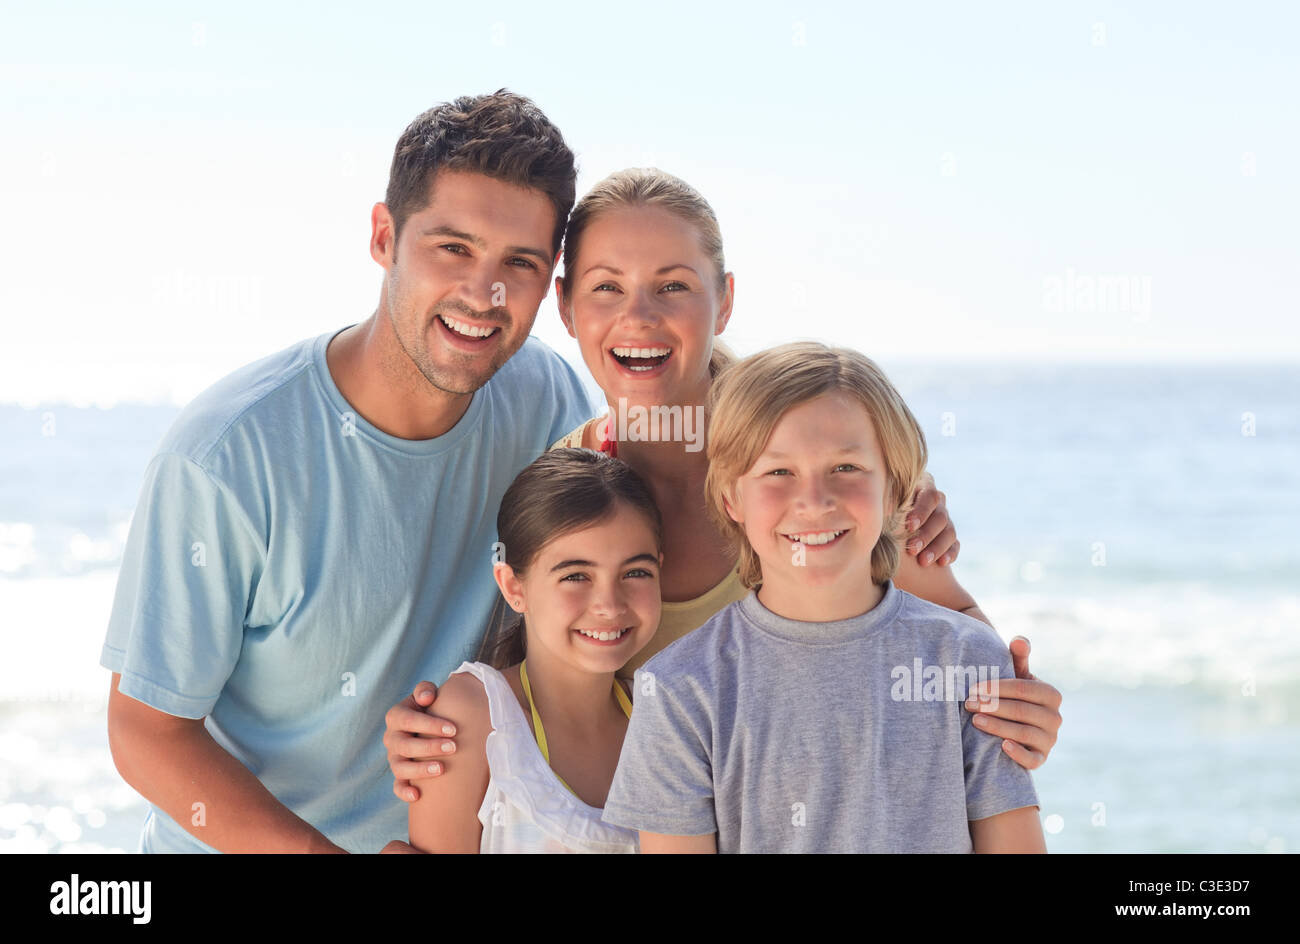 Joyful family at the beach Stock Photo